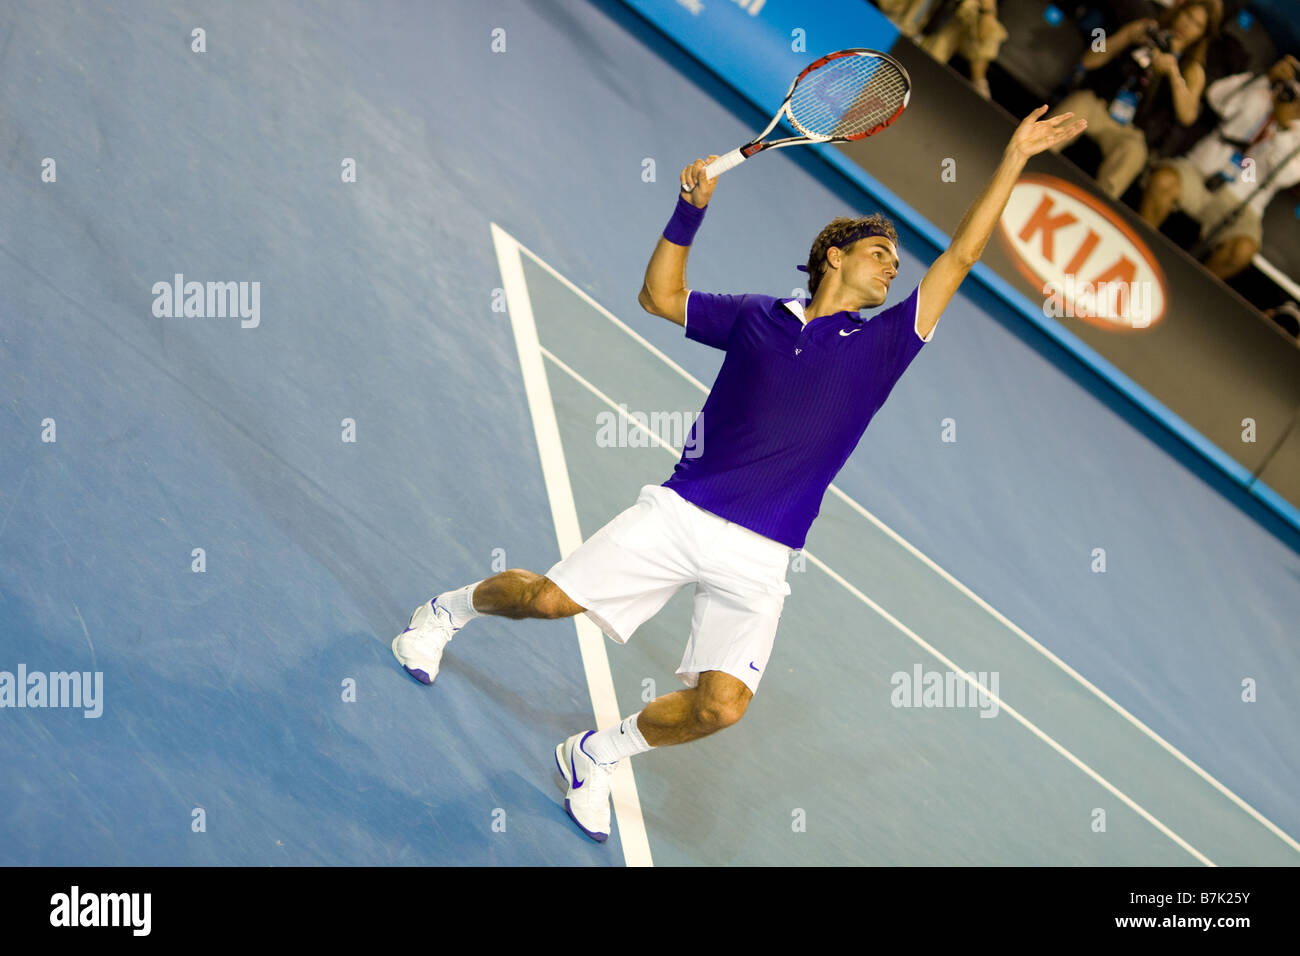 El tenista Roger Federer, Suiza en el Abierto de Australia el 19 de enero de 2009 en Melbourne, Australia. Foto de stock